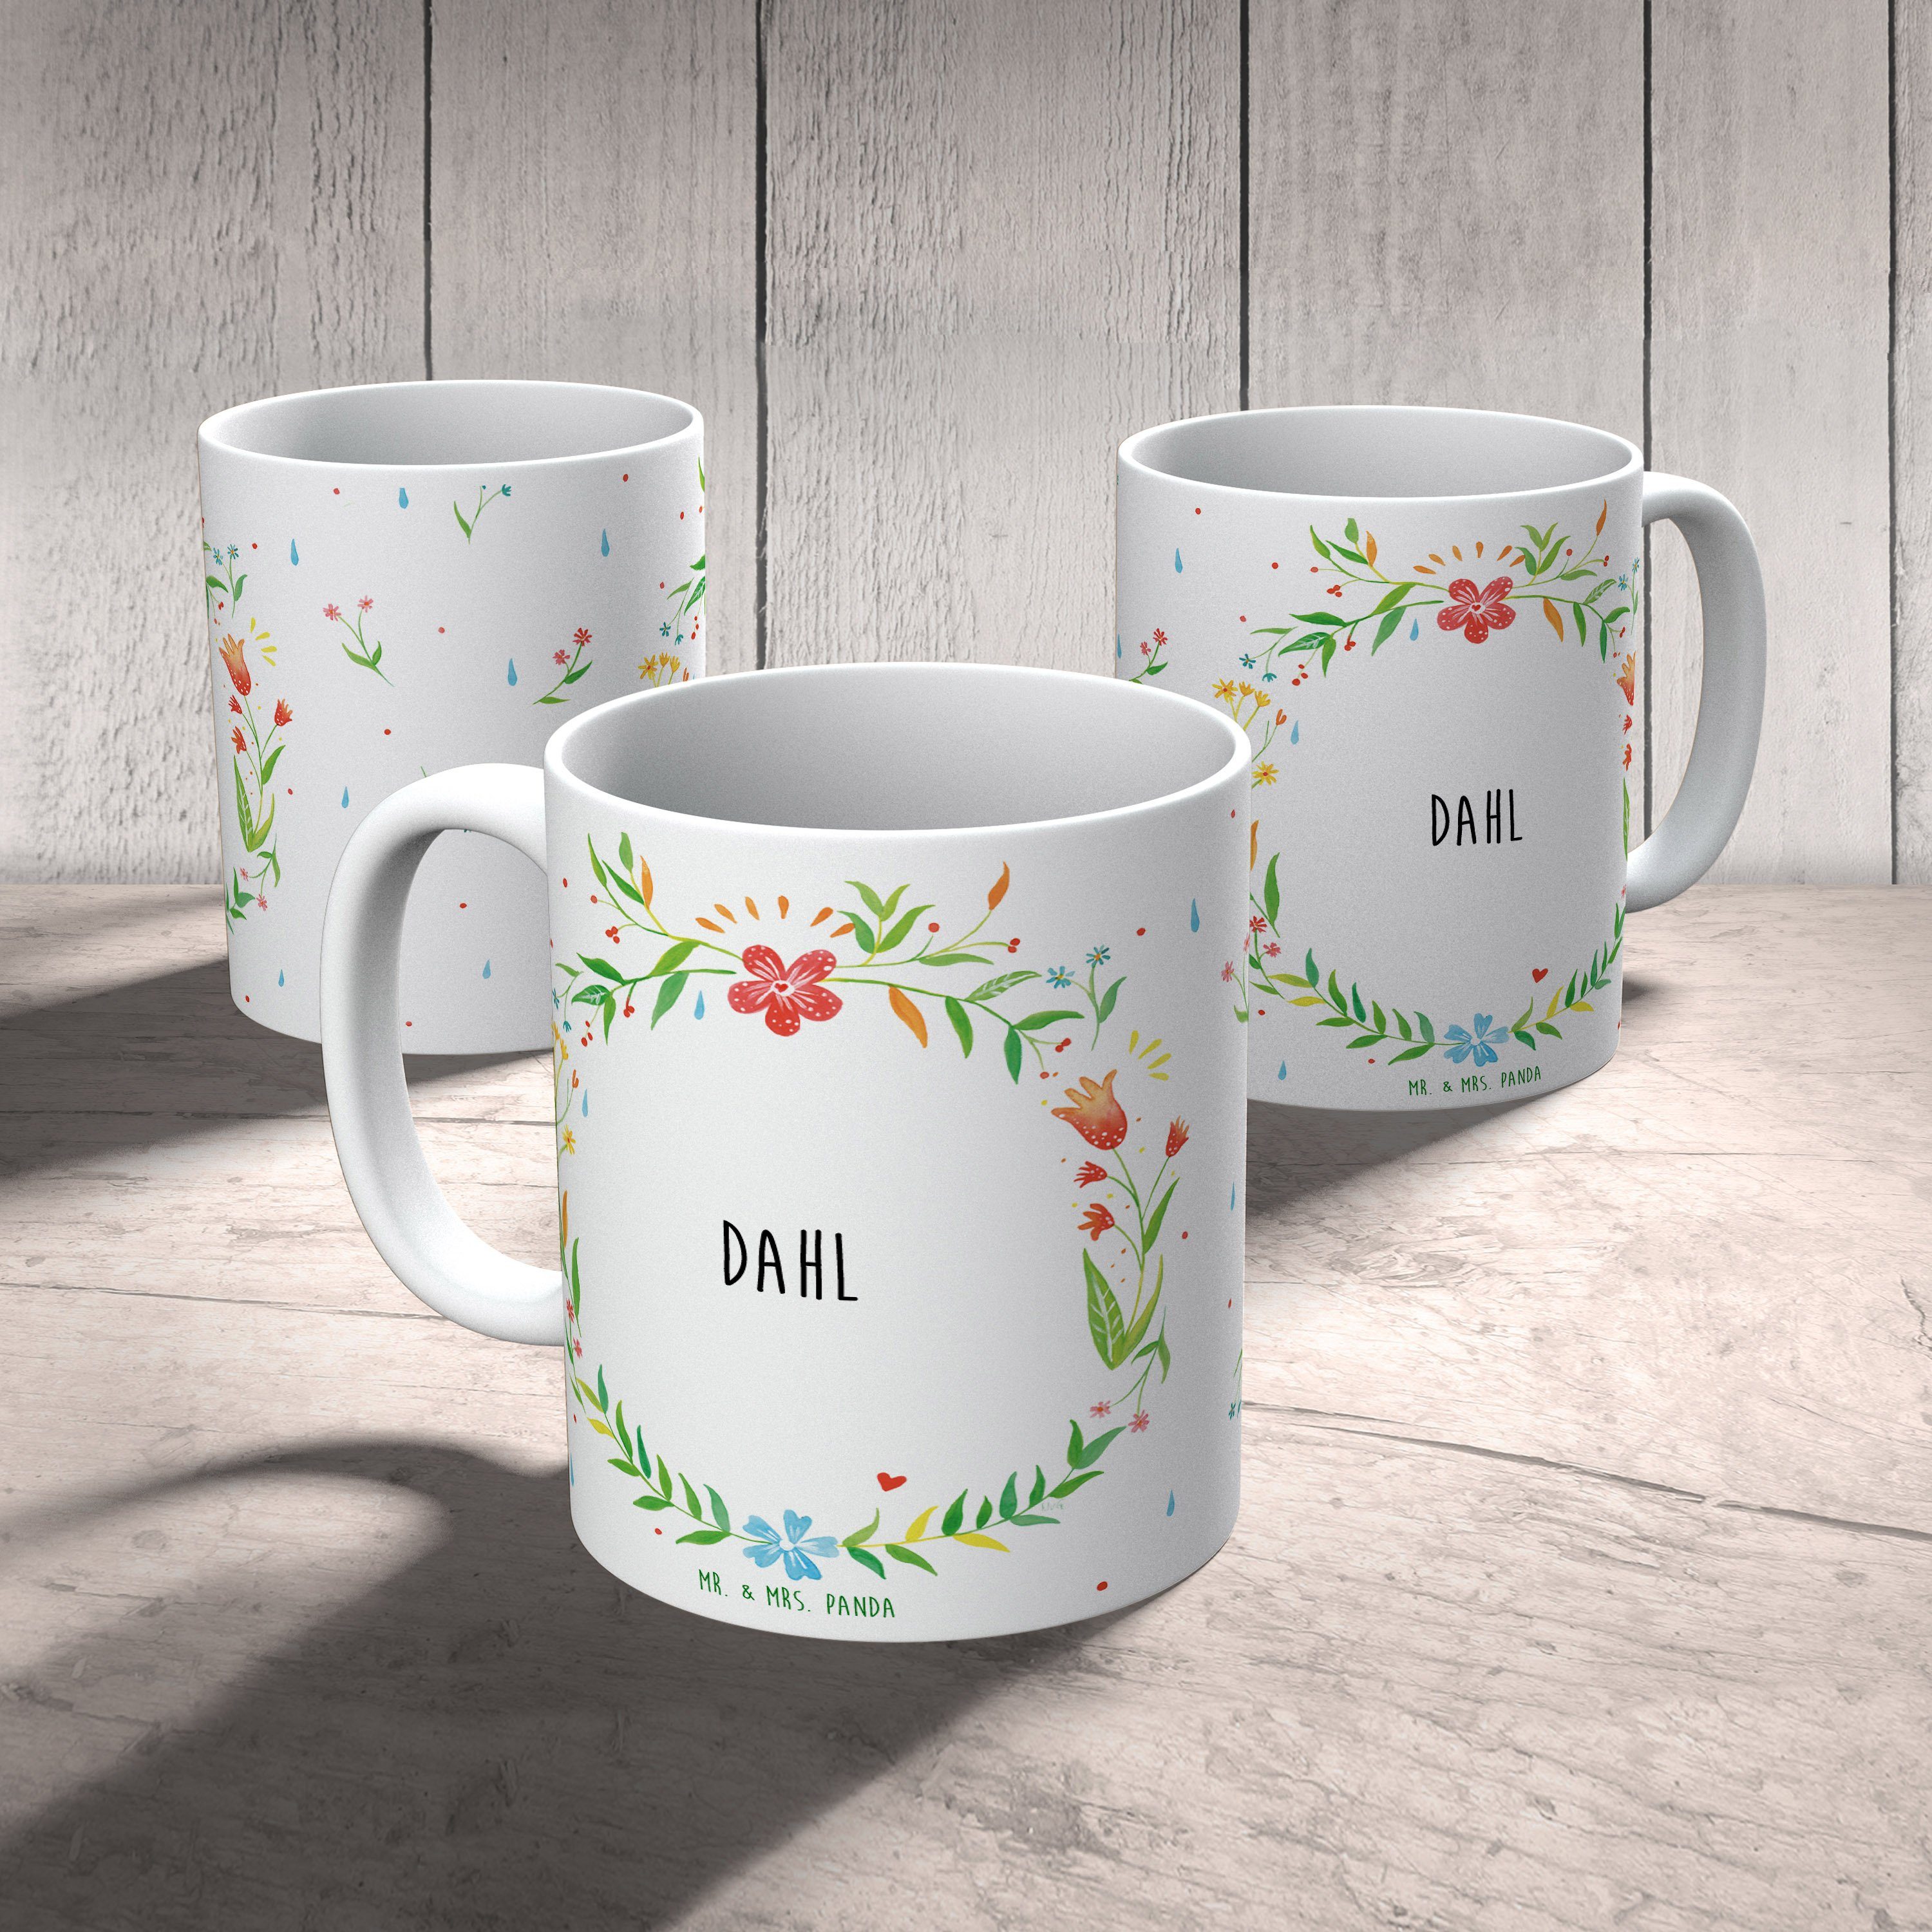 & Tasse Motive, Kaf, Panda Tasse, Tasse, Tasse Geschenk Keramik Mrs. Geschenk, Büro Tasse, Mr. Dahl -